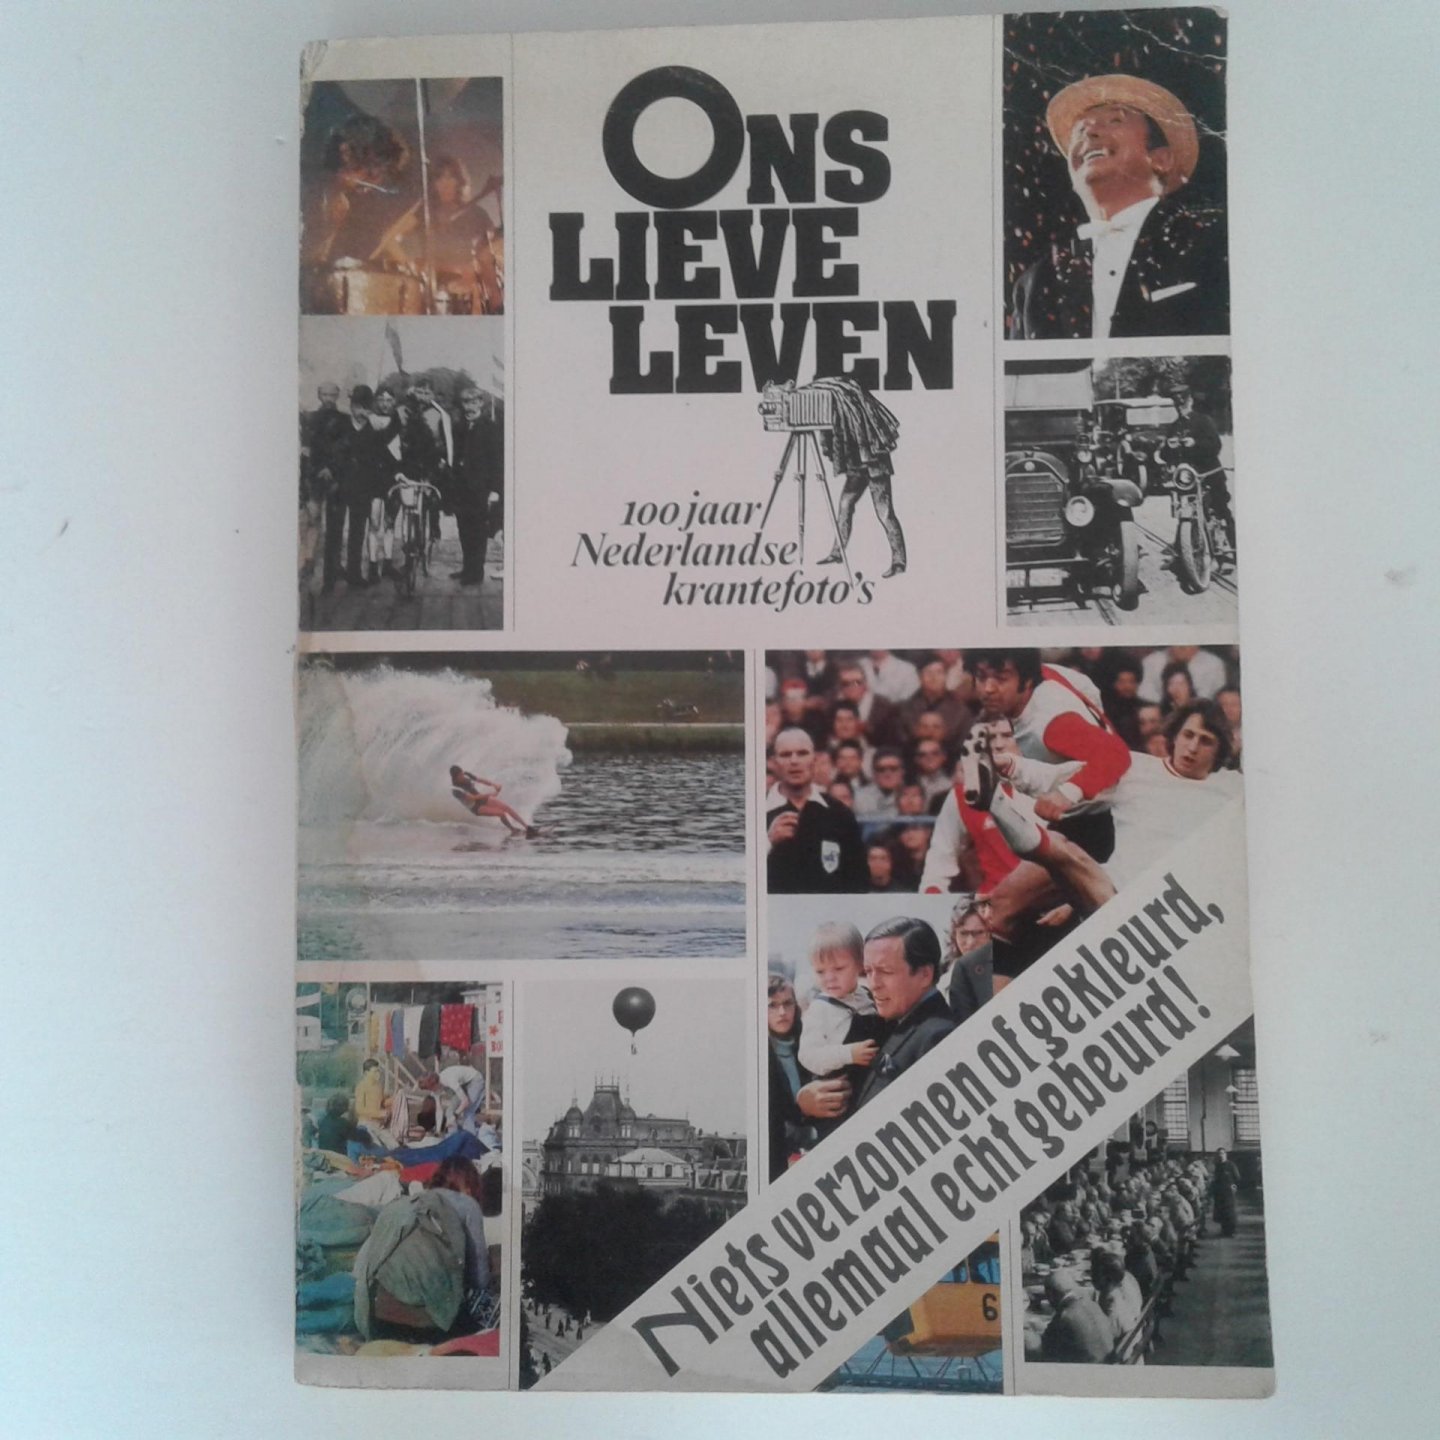  - 100 jaar Nederlandse krantefoto's ; Ons lieve leven